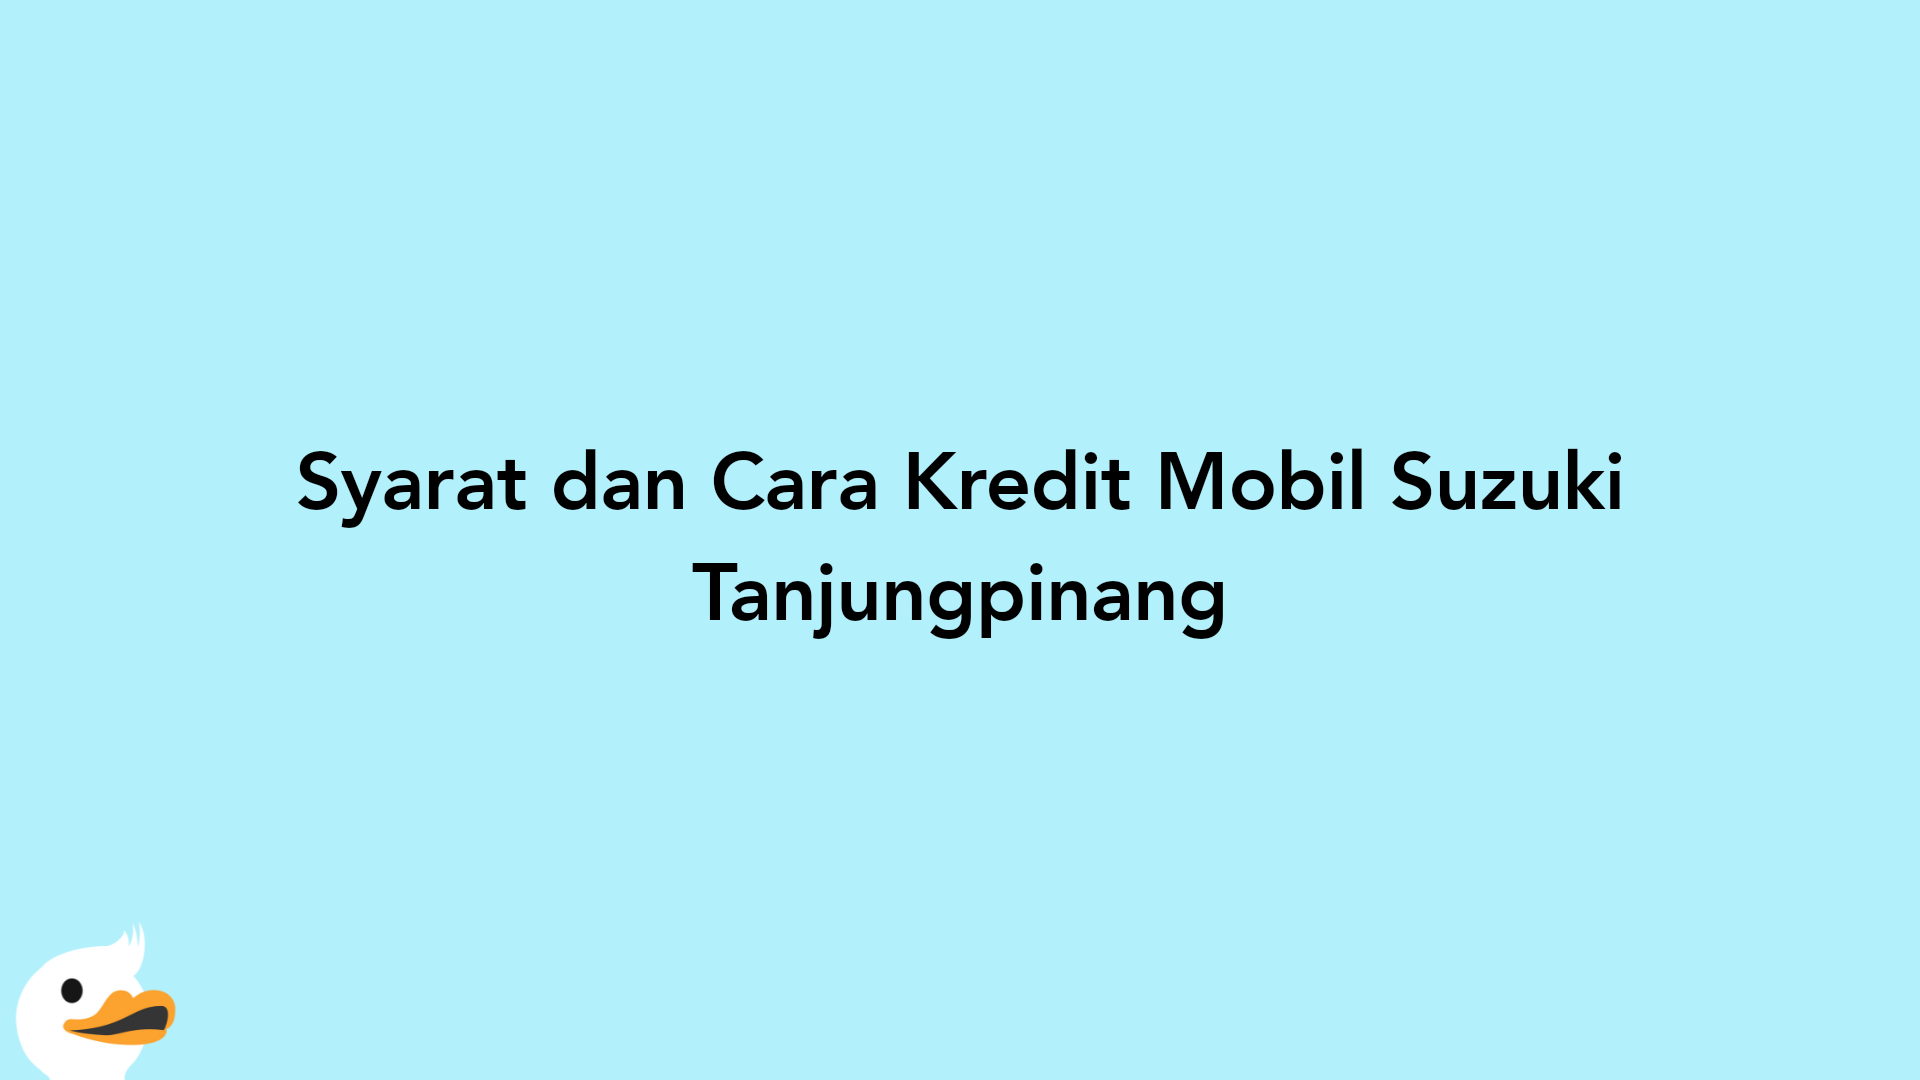 Syarat dan Cara Kredit Mobil Suzuki Tanjungpinang